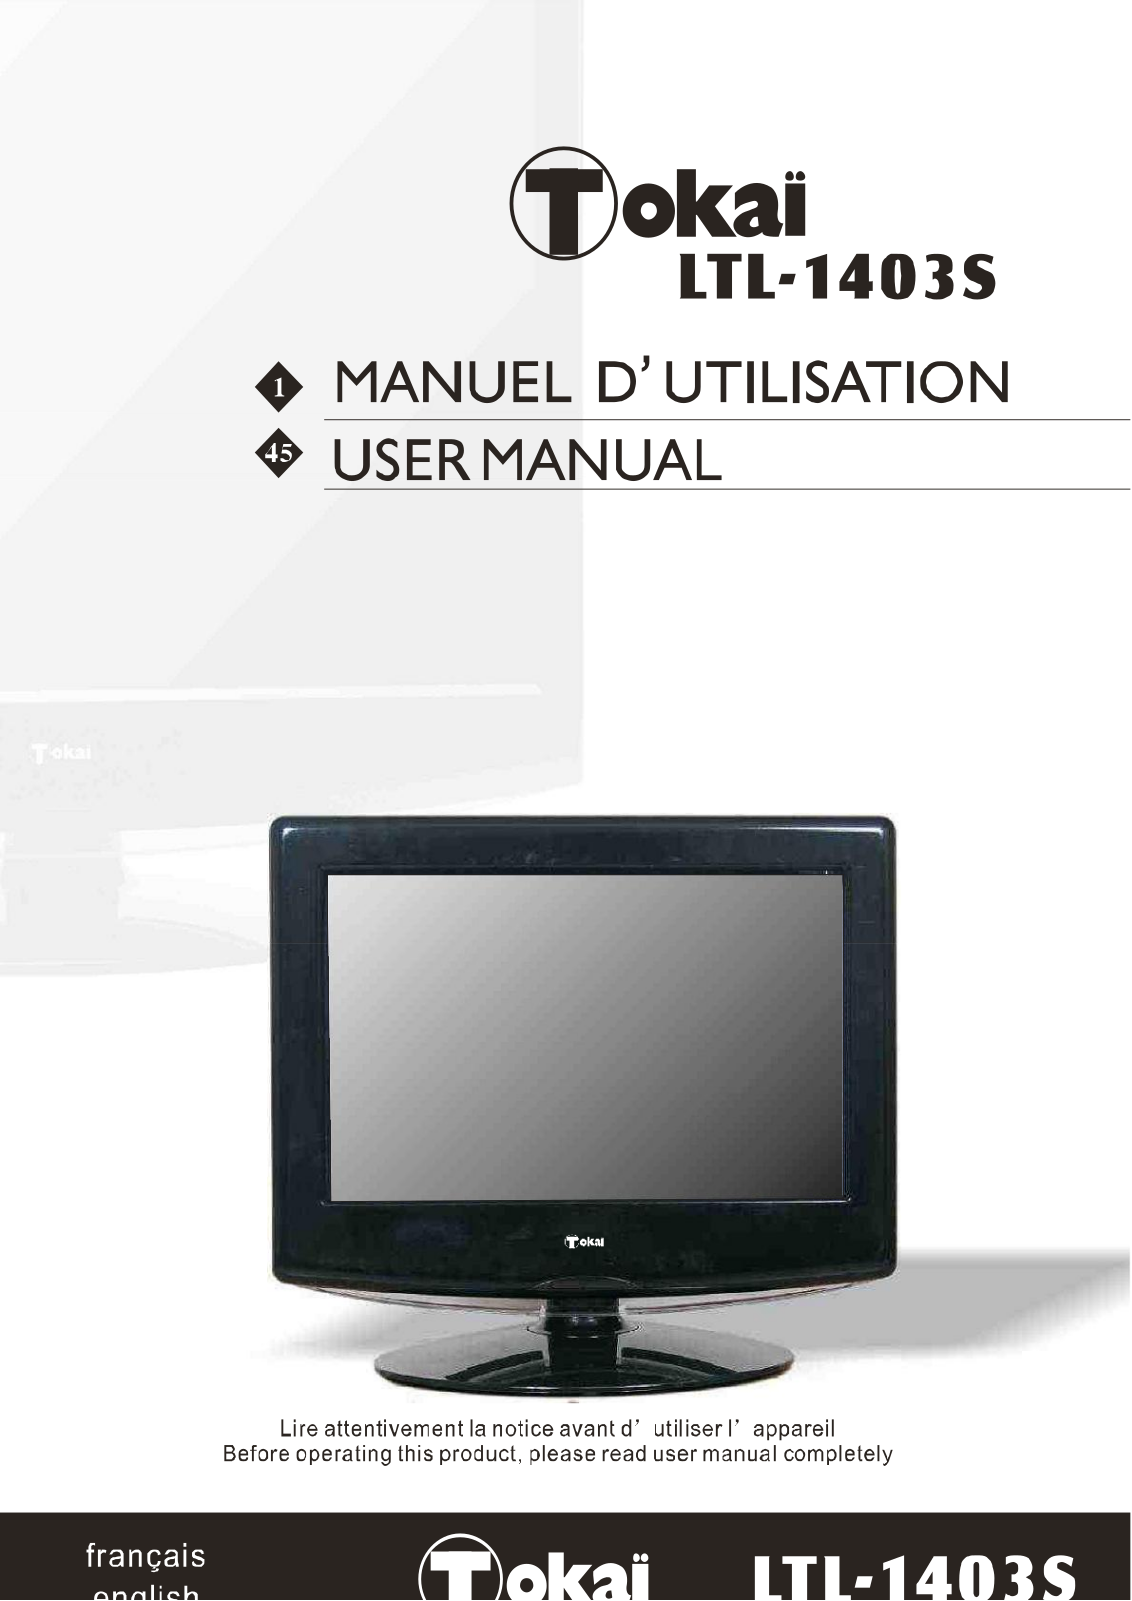 TOKAI LTL-1403 User Manual